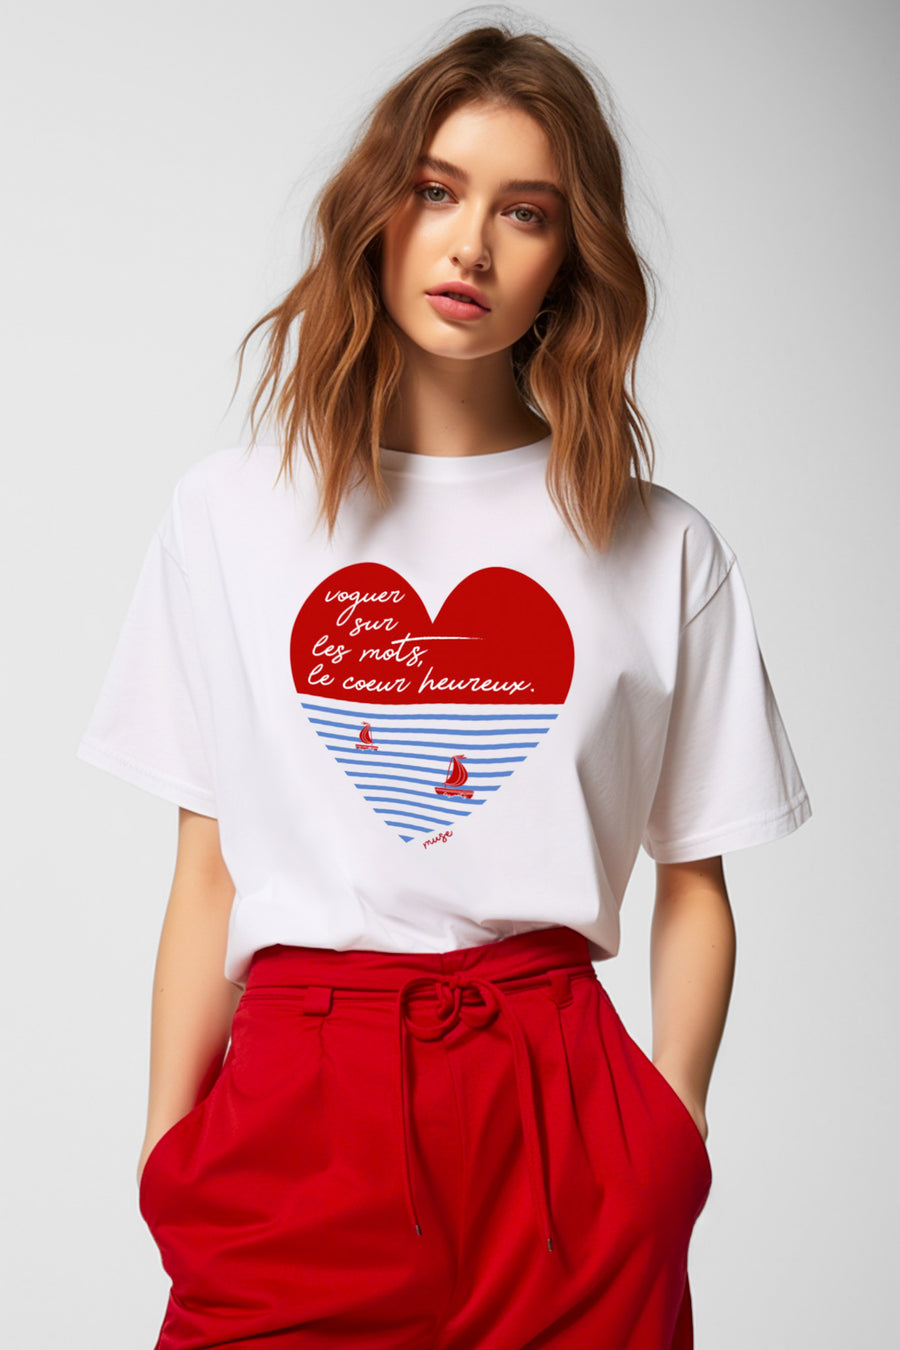 T-shirt | voguer sur les mots, le coeur heureux. (2 coloris)